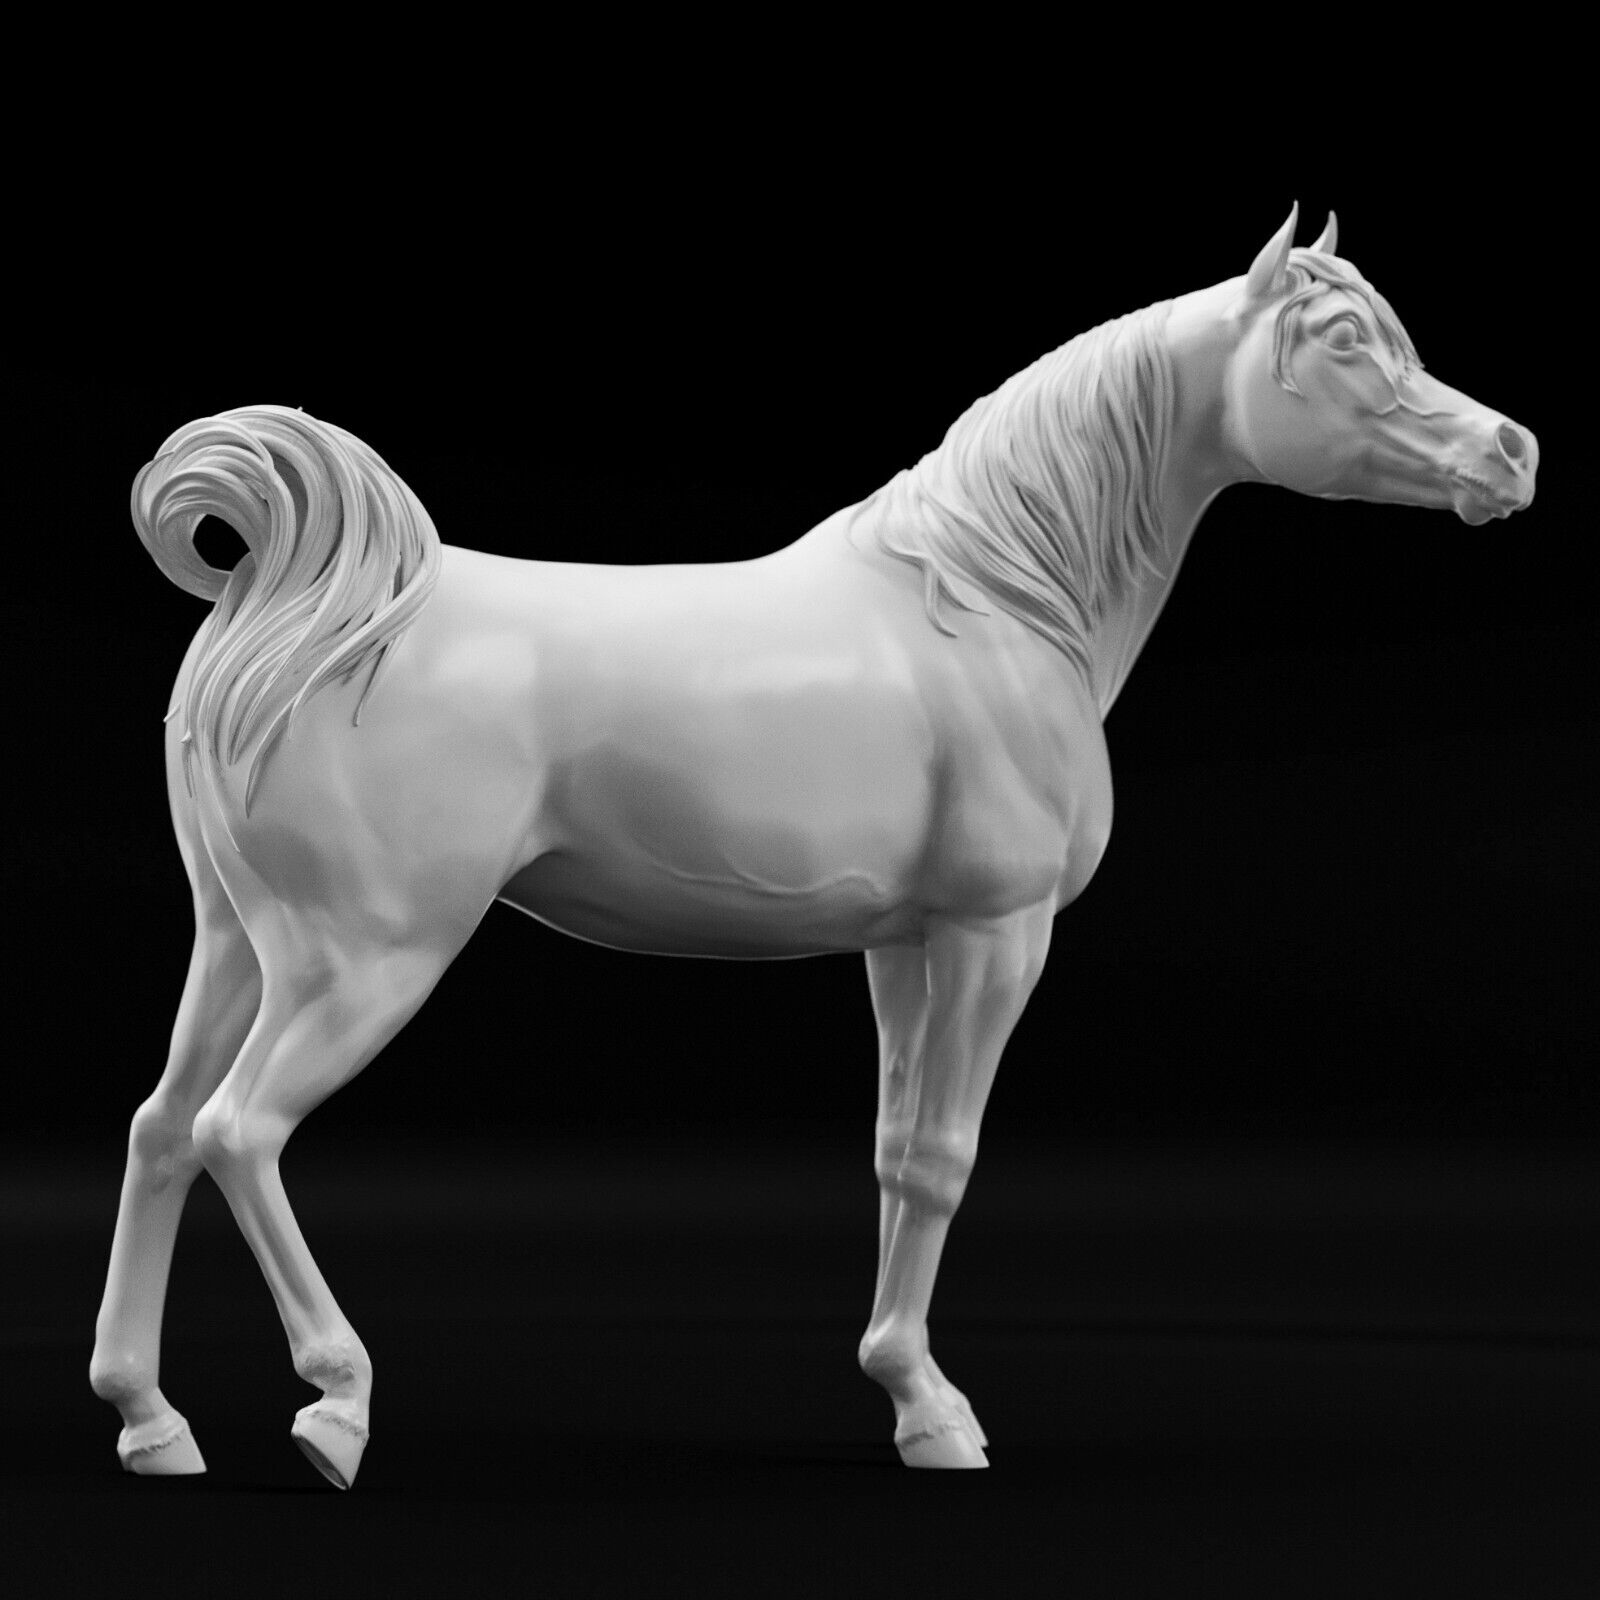 Breyer 1/12 Classic Model Horse Arabian Stallion White Resin Ready To Paint